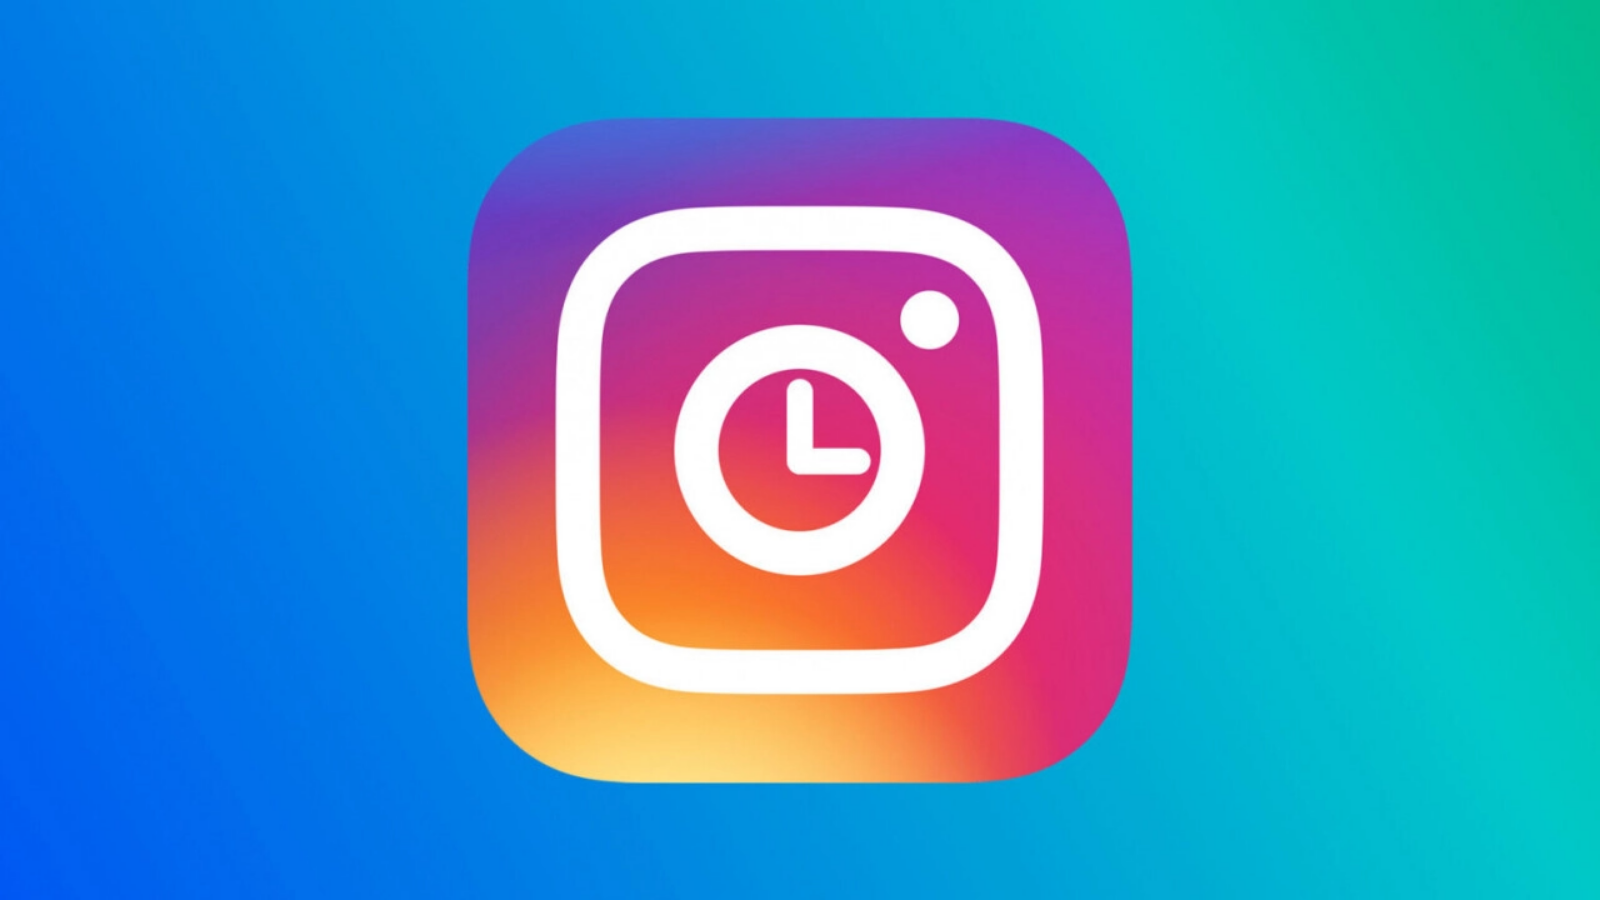 Feed cronológico do instagram voltará em 2022